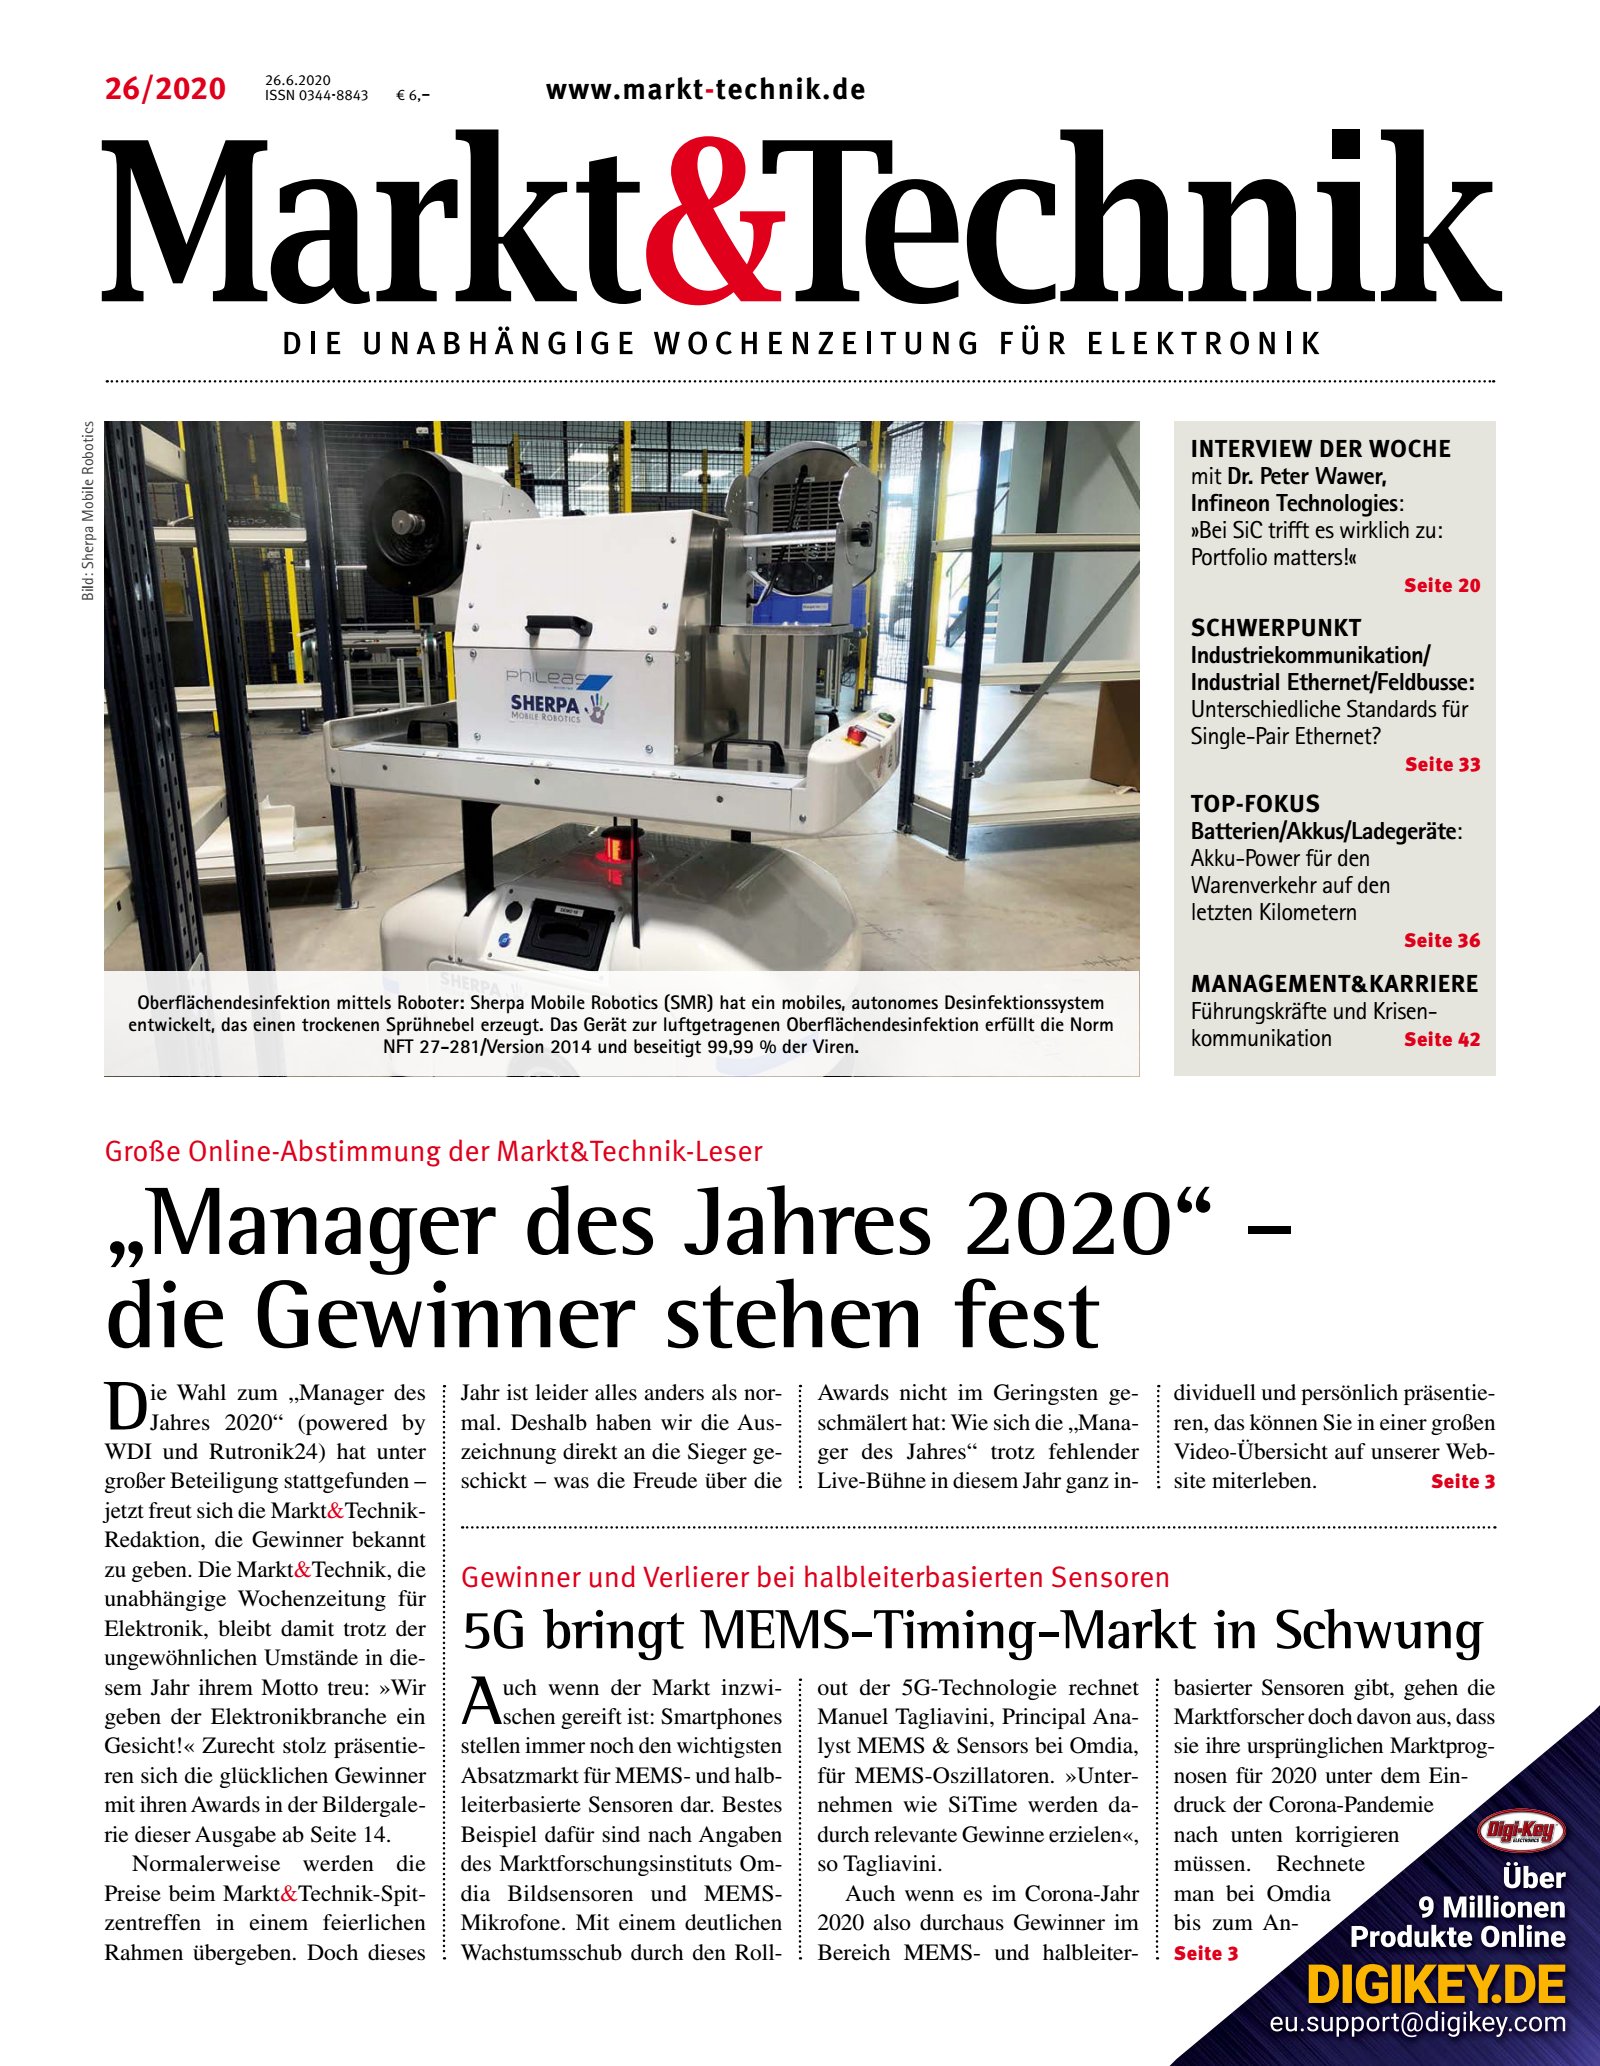 Markt&Technik 26/2020 Digital